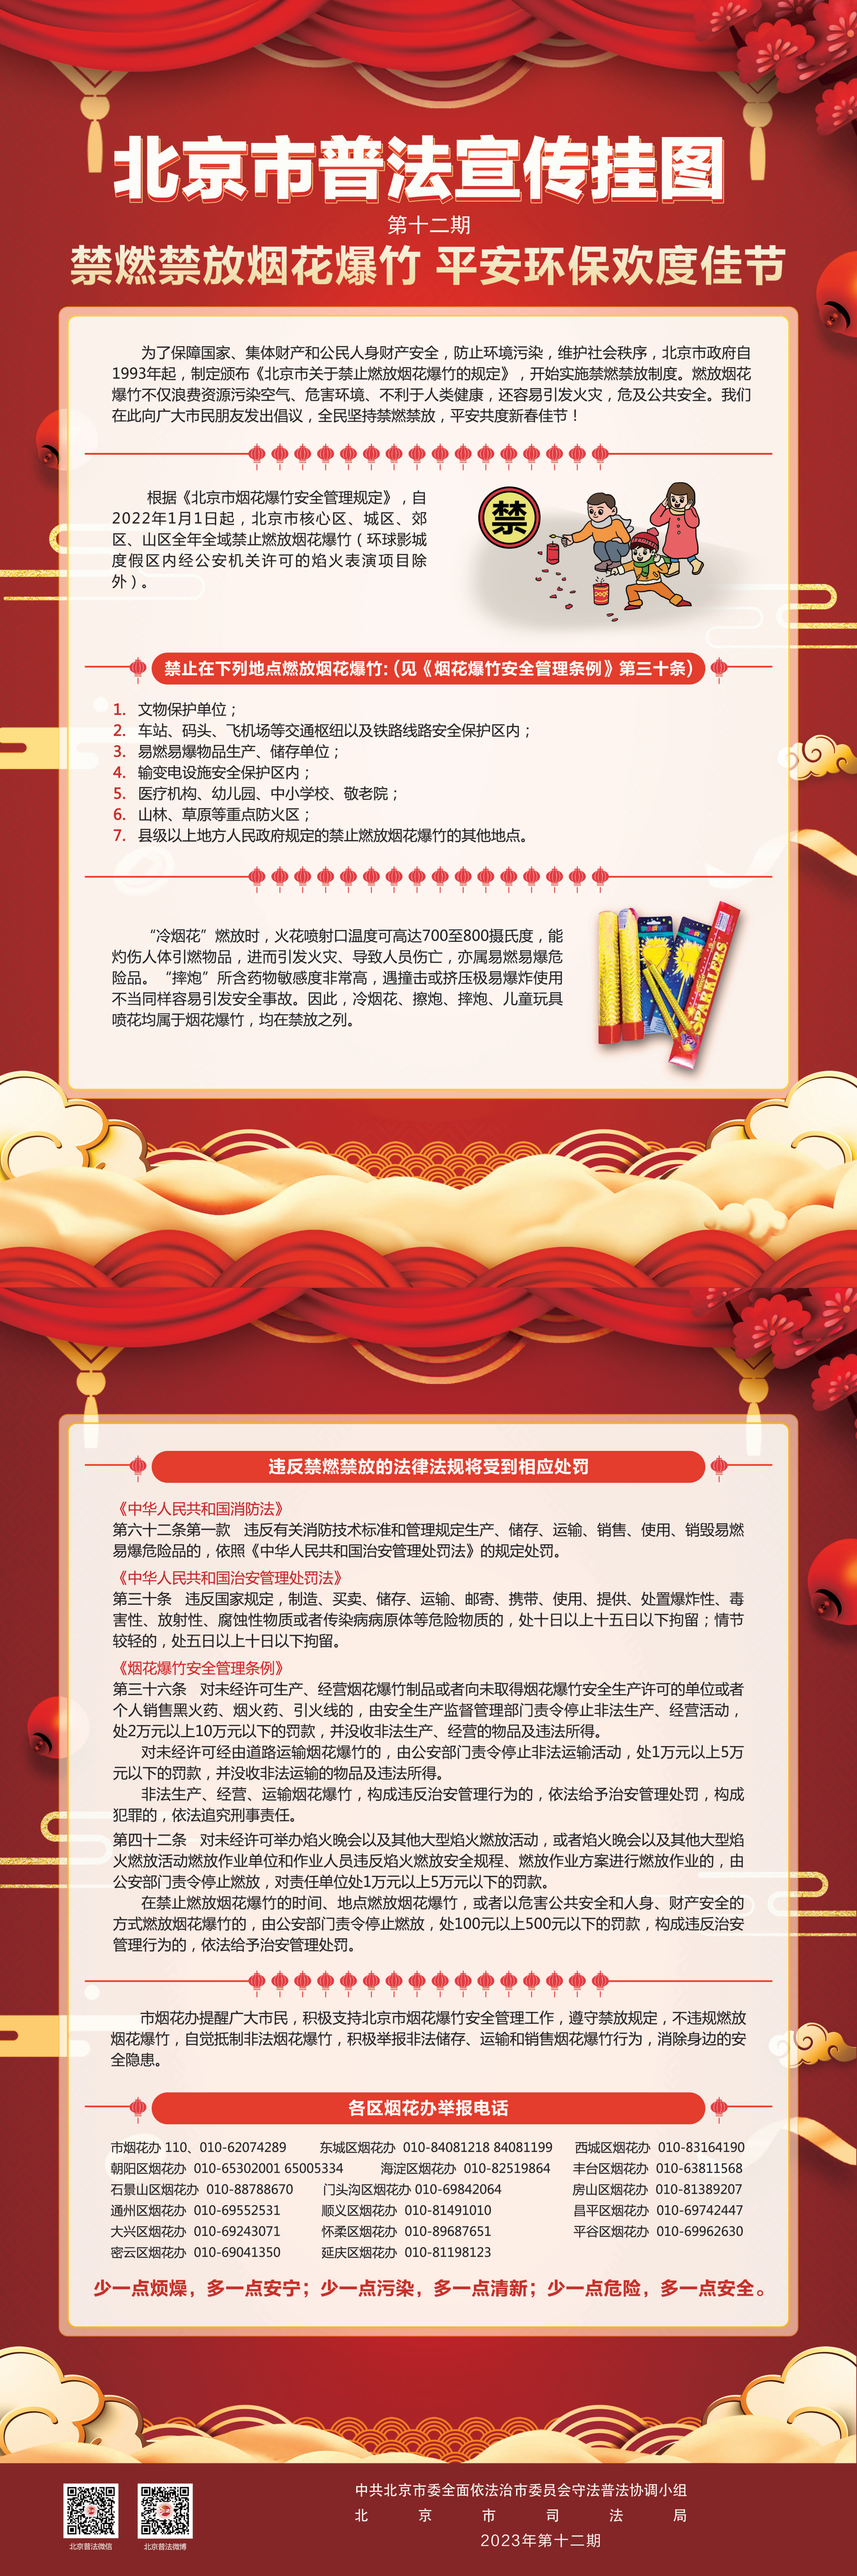 北京市普法宣传挂图第十二期